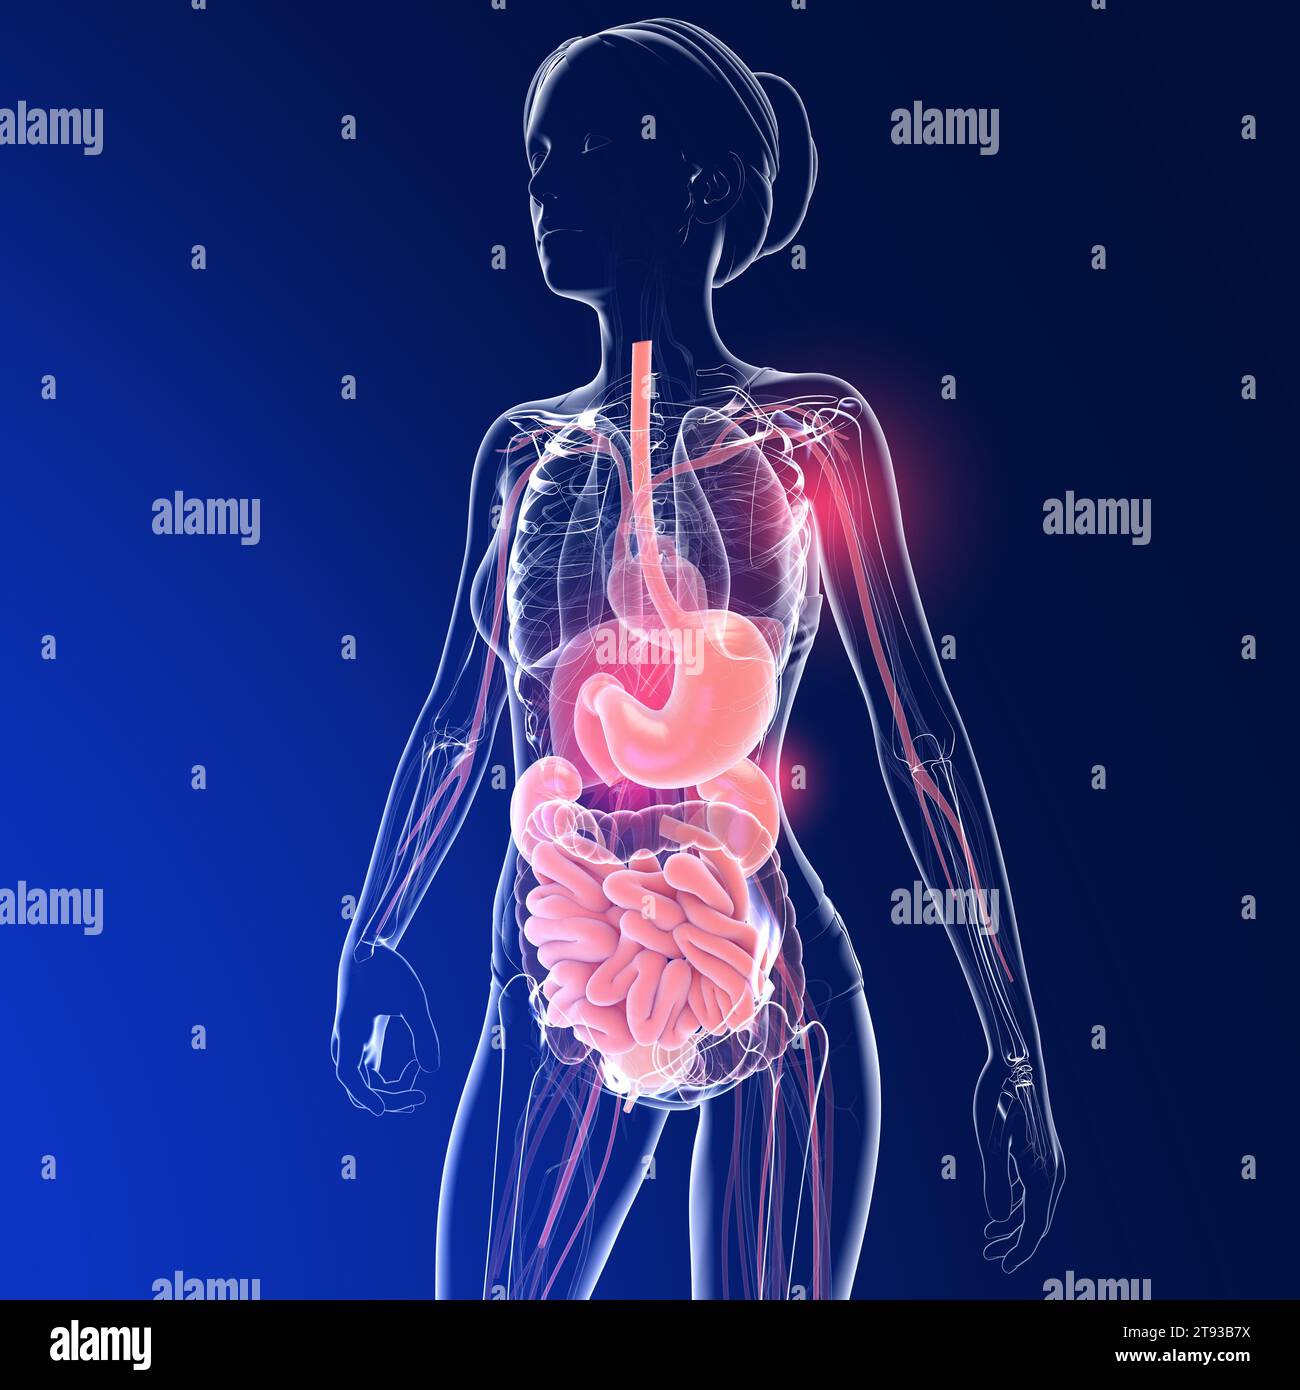 Illustrazione 3D trasparente dell'apparato digerente femminile. Anatomia dell'intestino, dello stomaco e di altri organi interni. Foto Stock